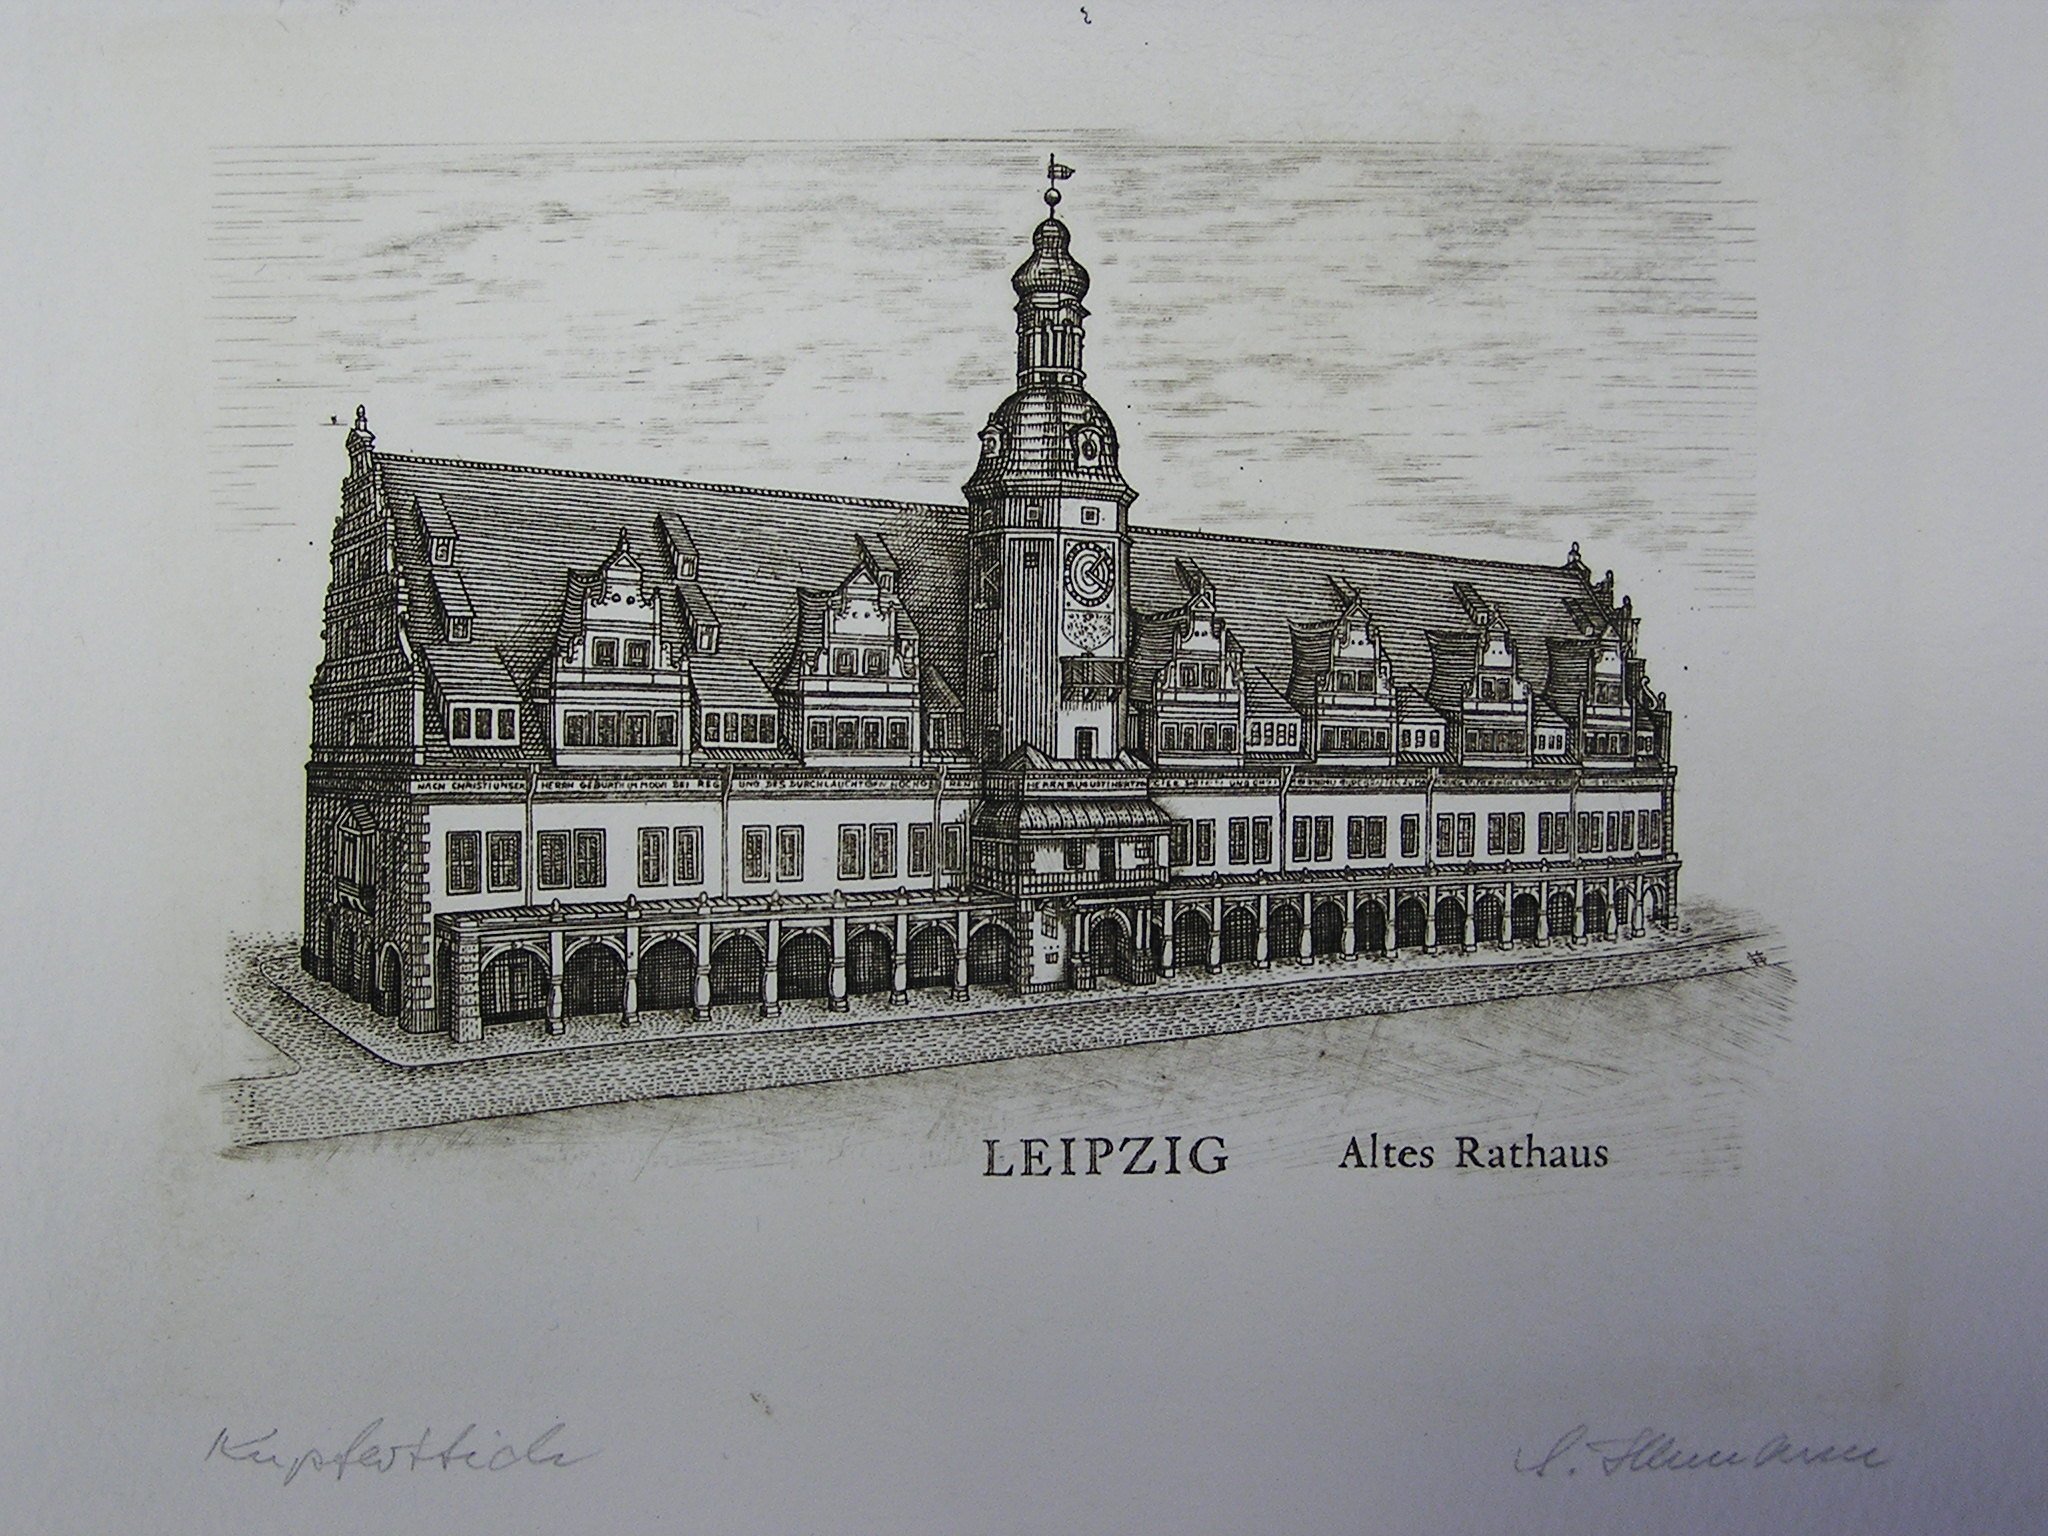 KUpferstich "LEIPZIG Altes Rathaus" (Museum für Druckkunst Leipzig CC BY-NC-SA)